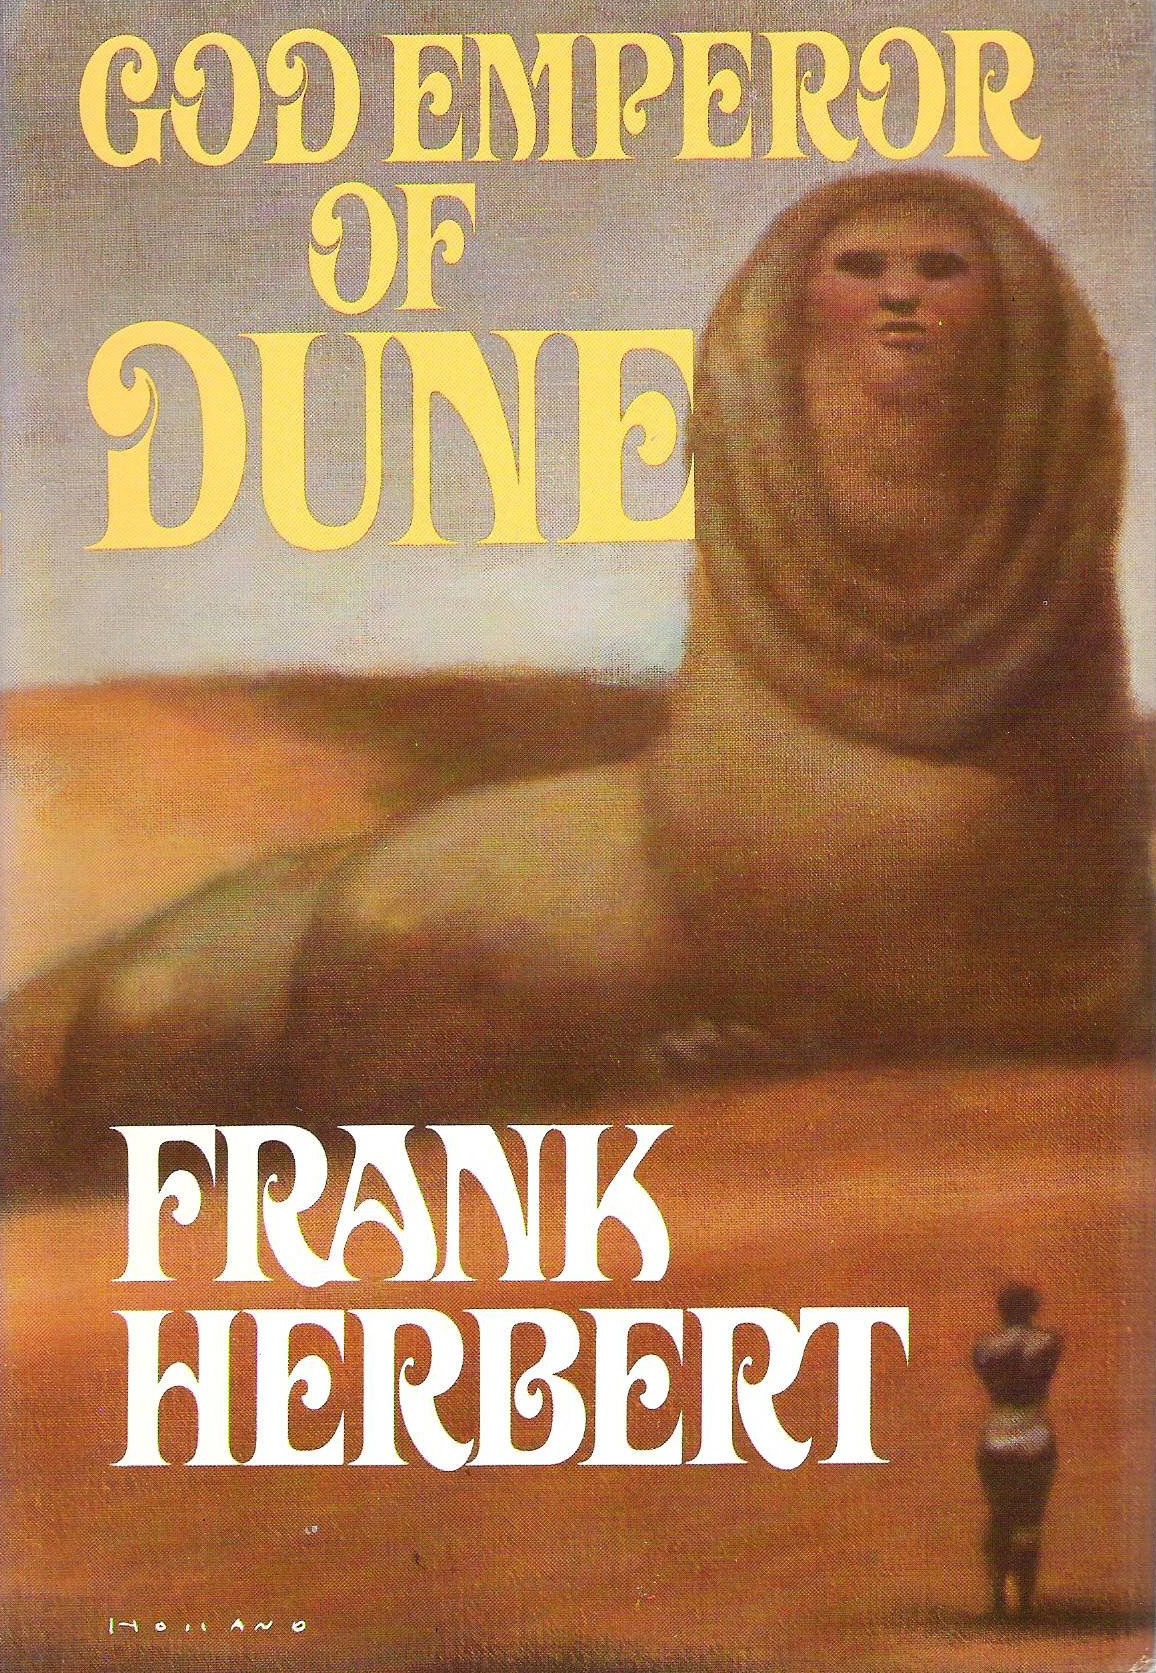 Ett omslag till boken God Emperor of Dune, med en gigantisk sandmask med ett mänskligt ansikte sittande i öknen, en liten människofigur i siluett framför den, stående och vänd mot den